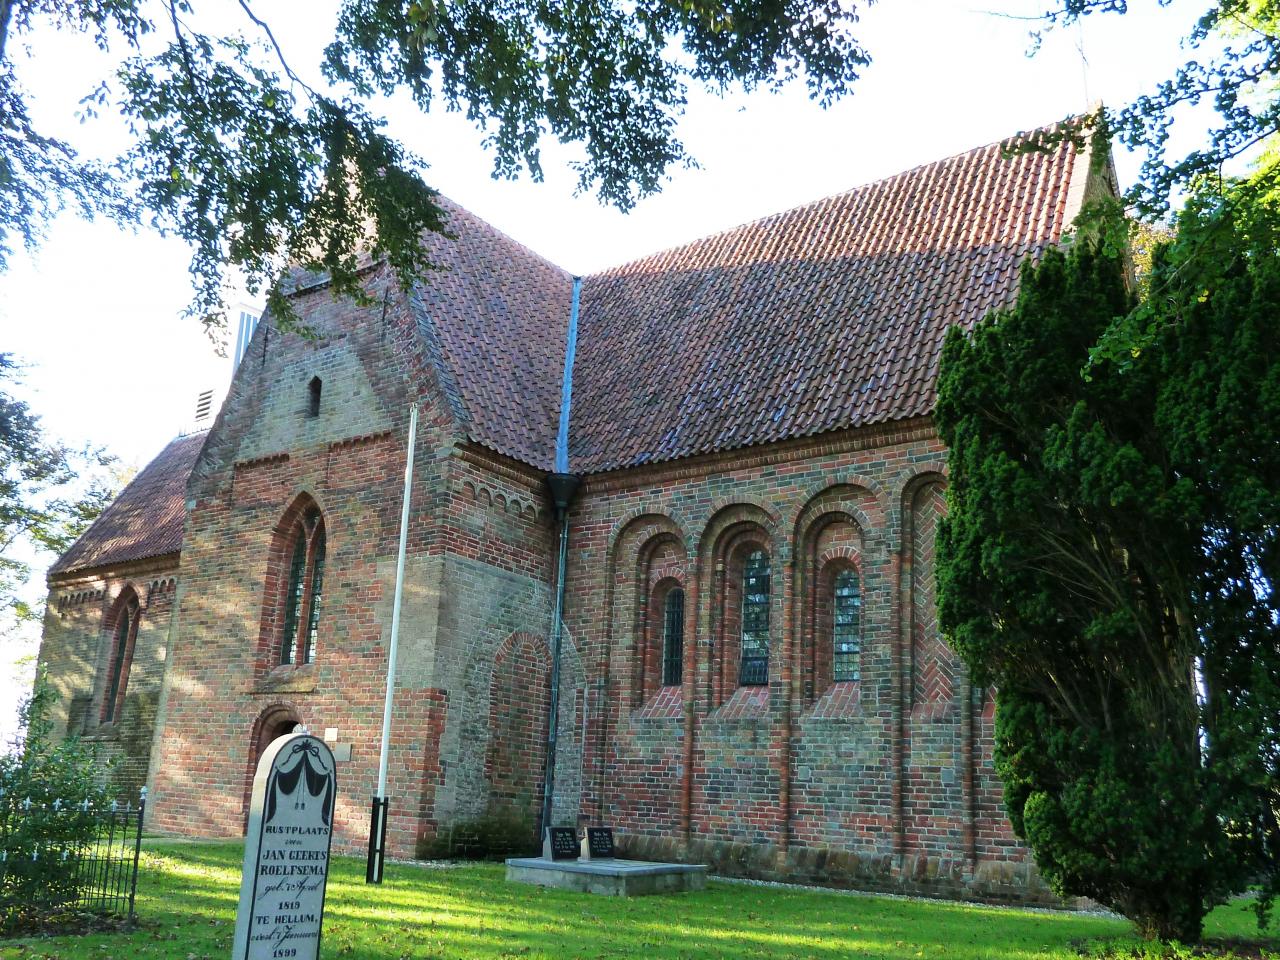 13th century church in a park